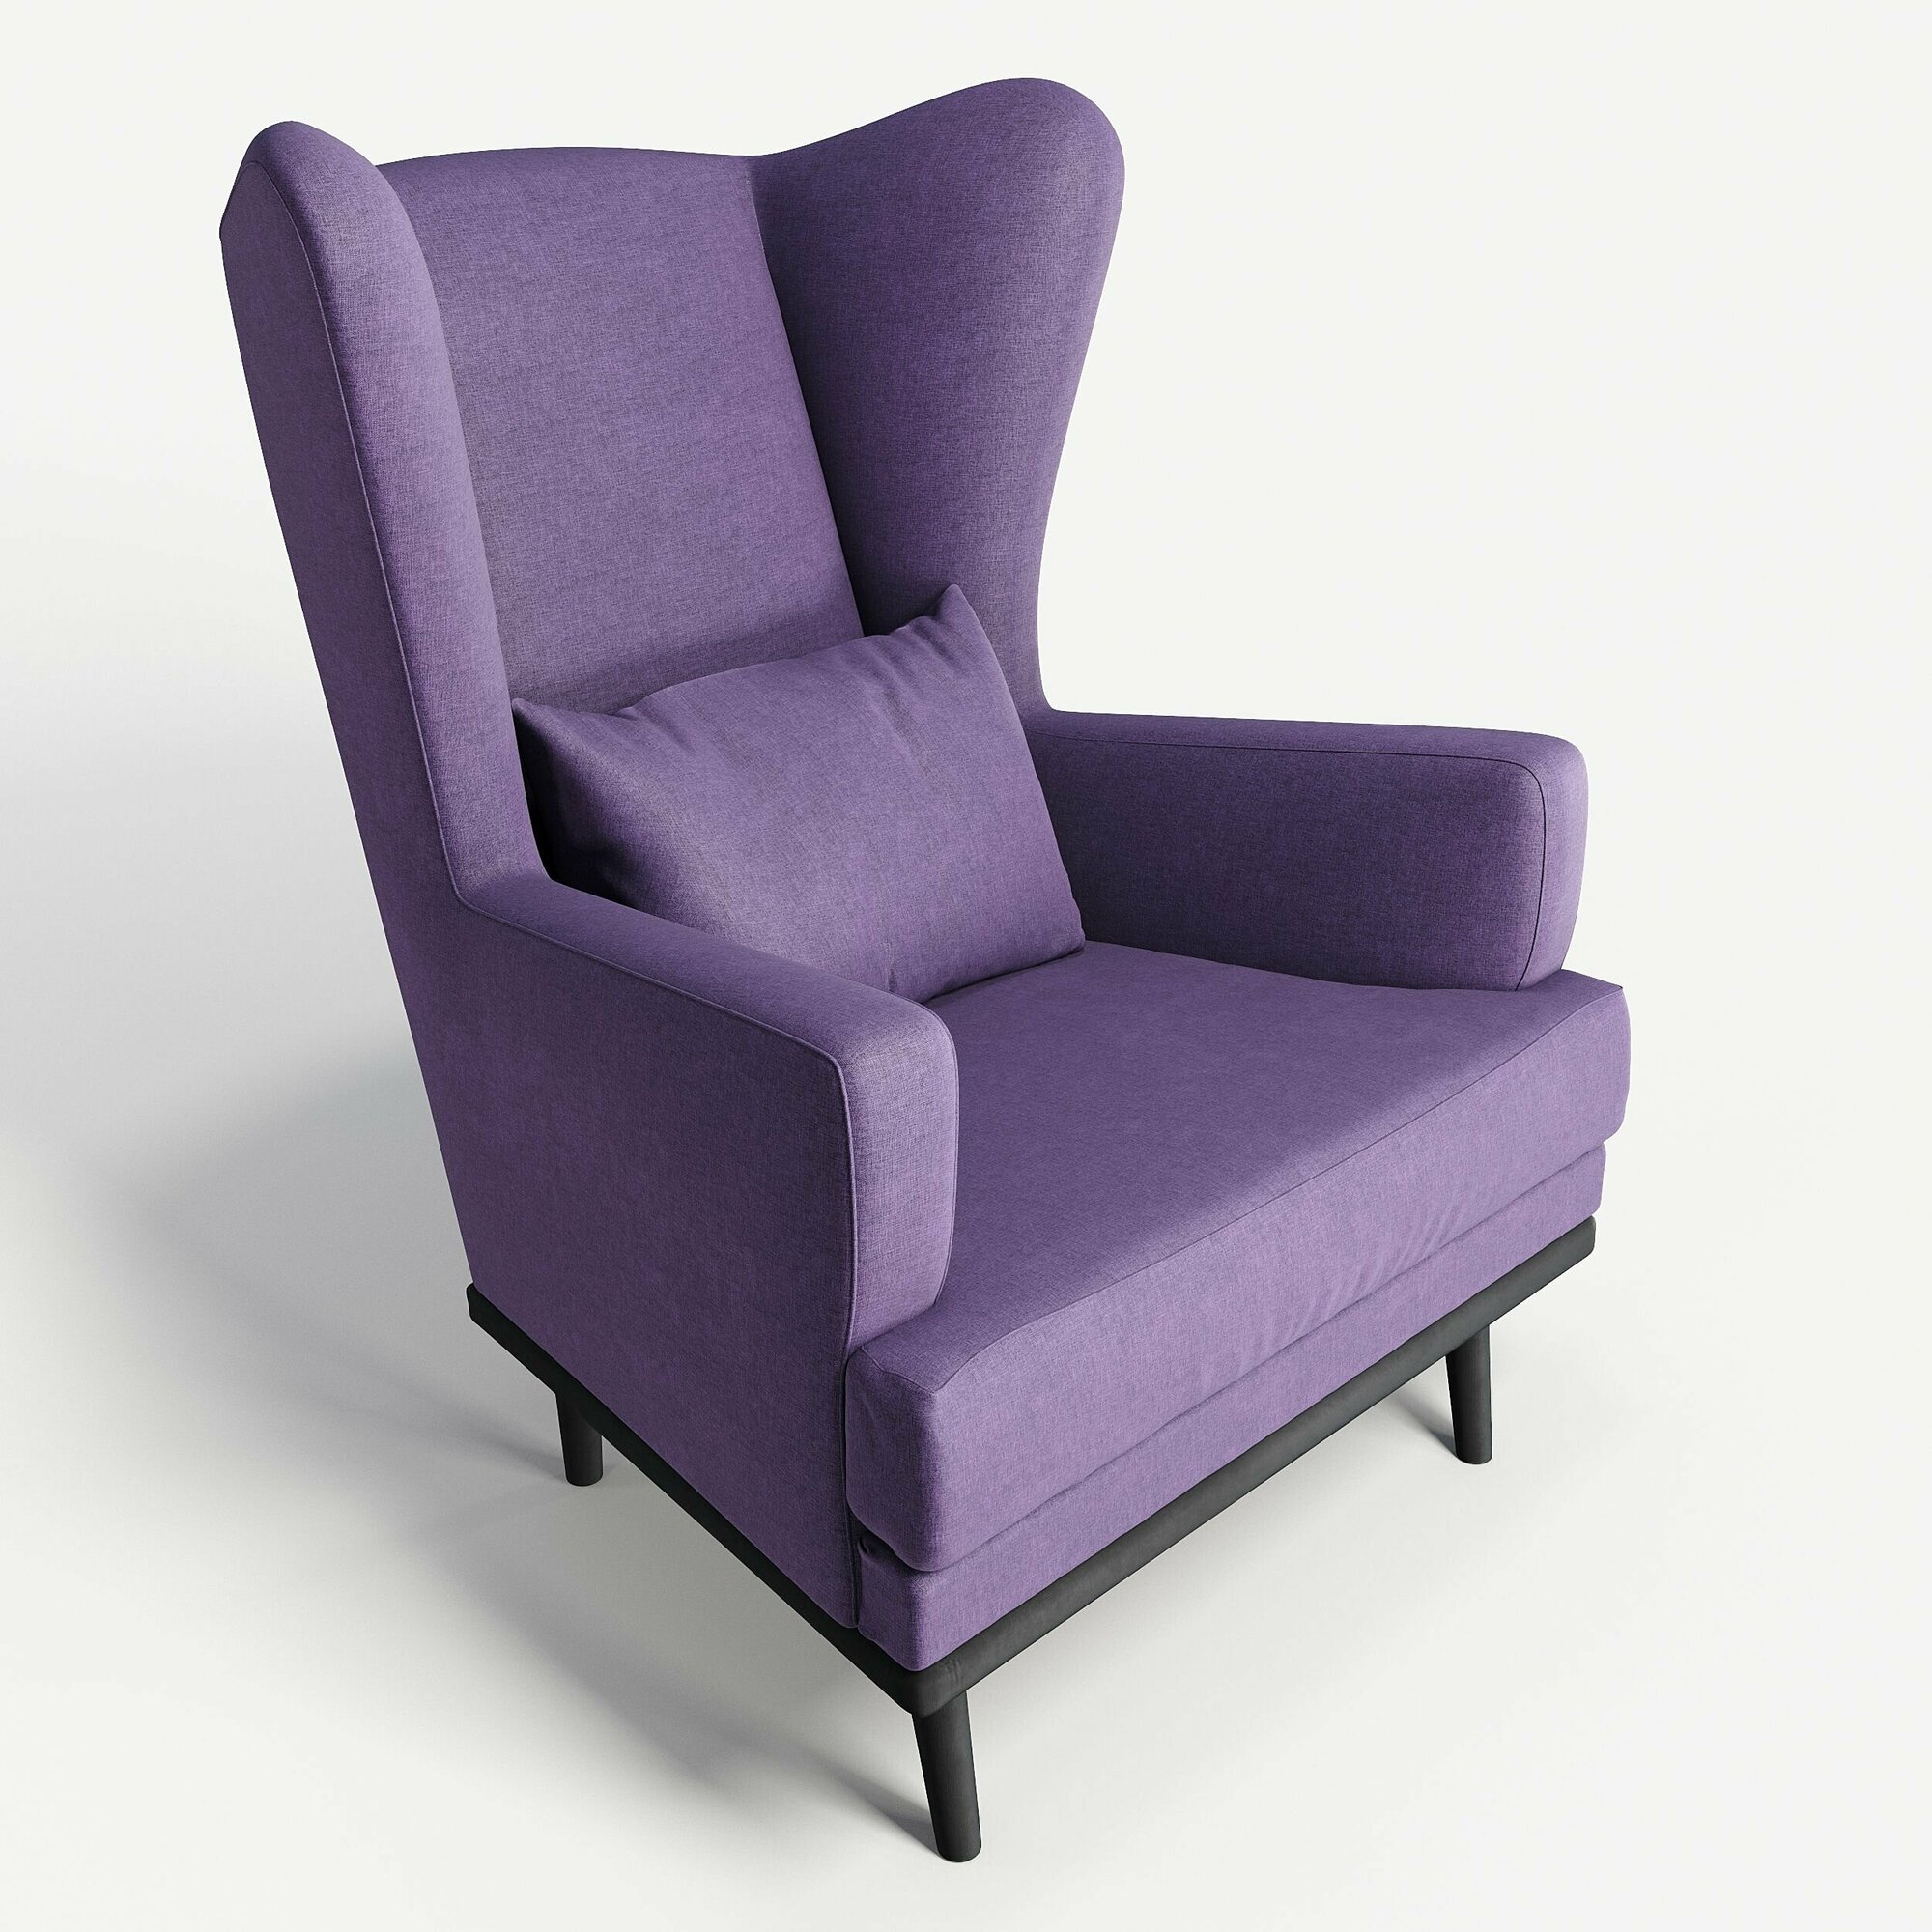 Кресло мягкое с ушами Фантазёр D-9 (фиолетовый) на высоких ножках, для отдыха и чтения книг. В гостиную, балкон, спальню и переговорную комнату.